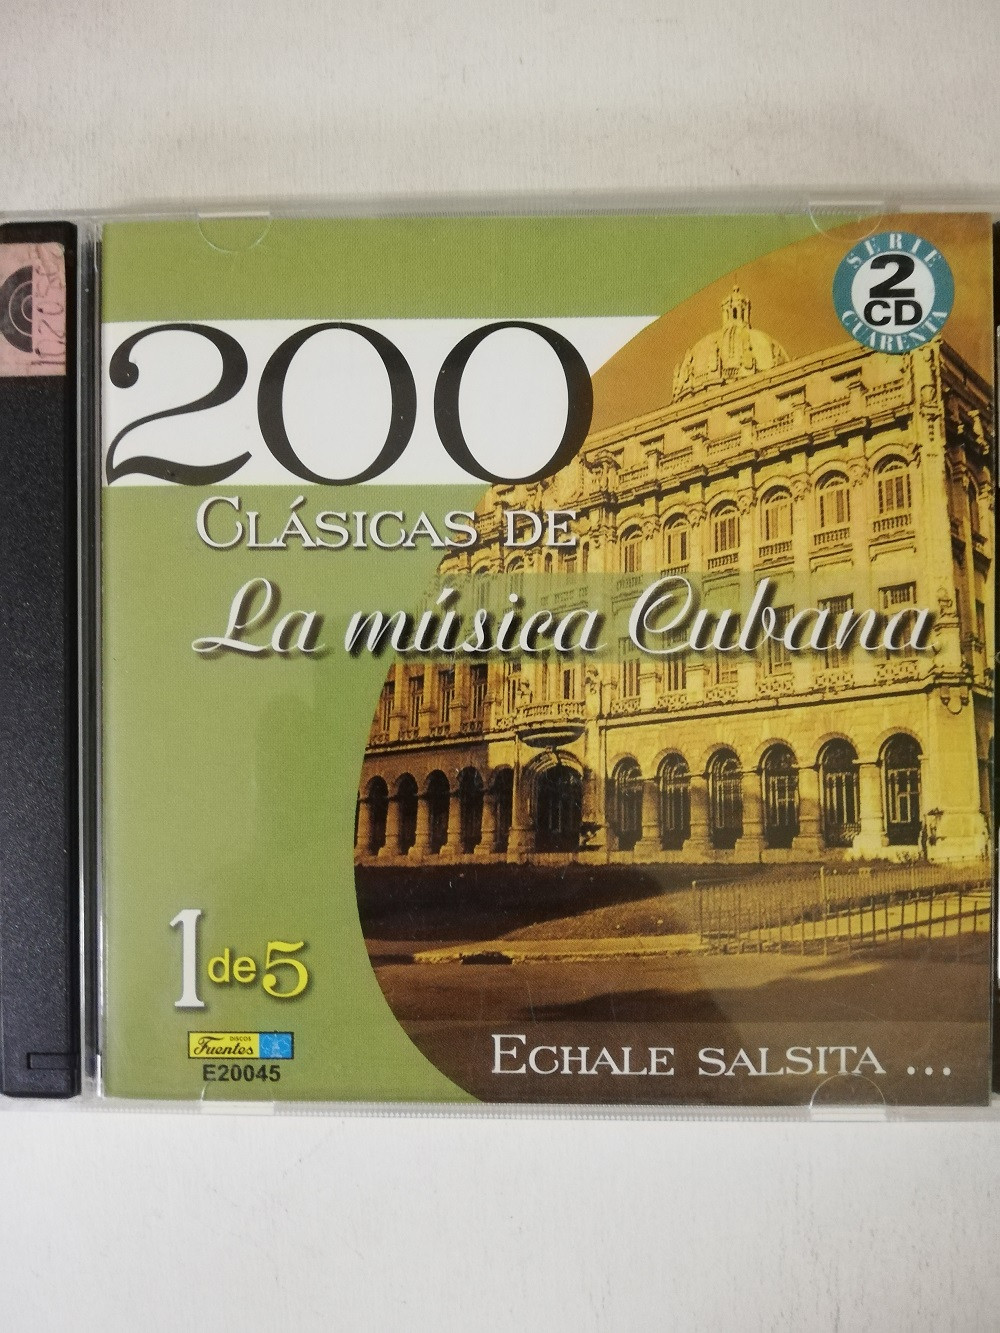 Imagen CD X 2 200 CLÁSICAS DE LA MÚSICA CUBANA VOL. 1 - ECHALE SALSITA... 1